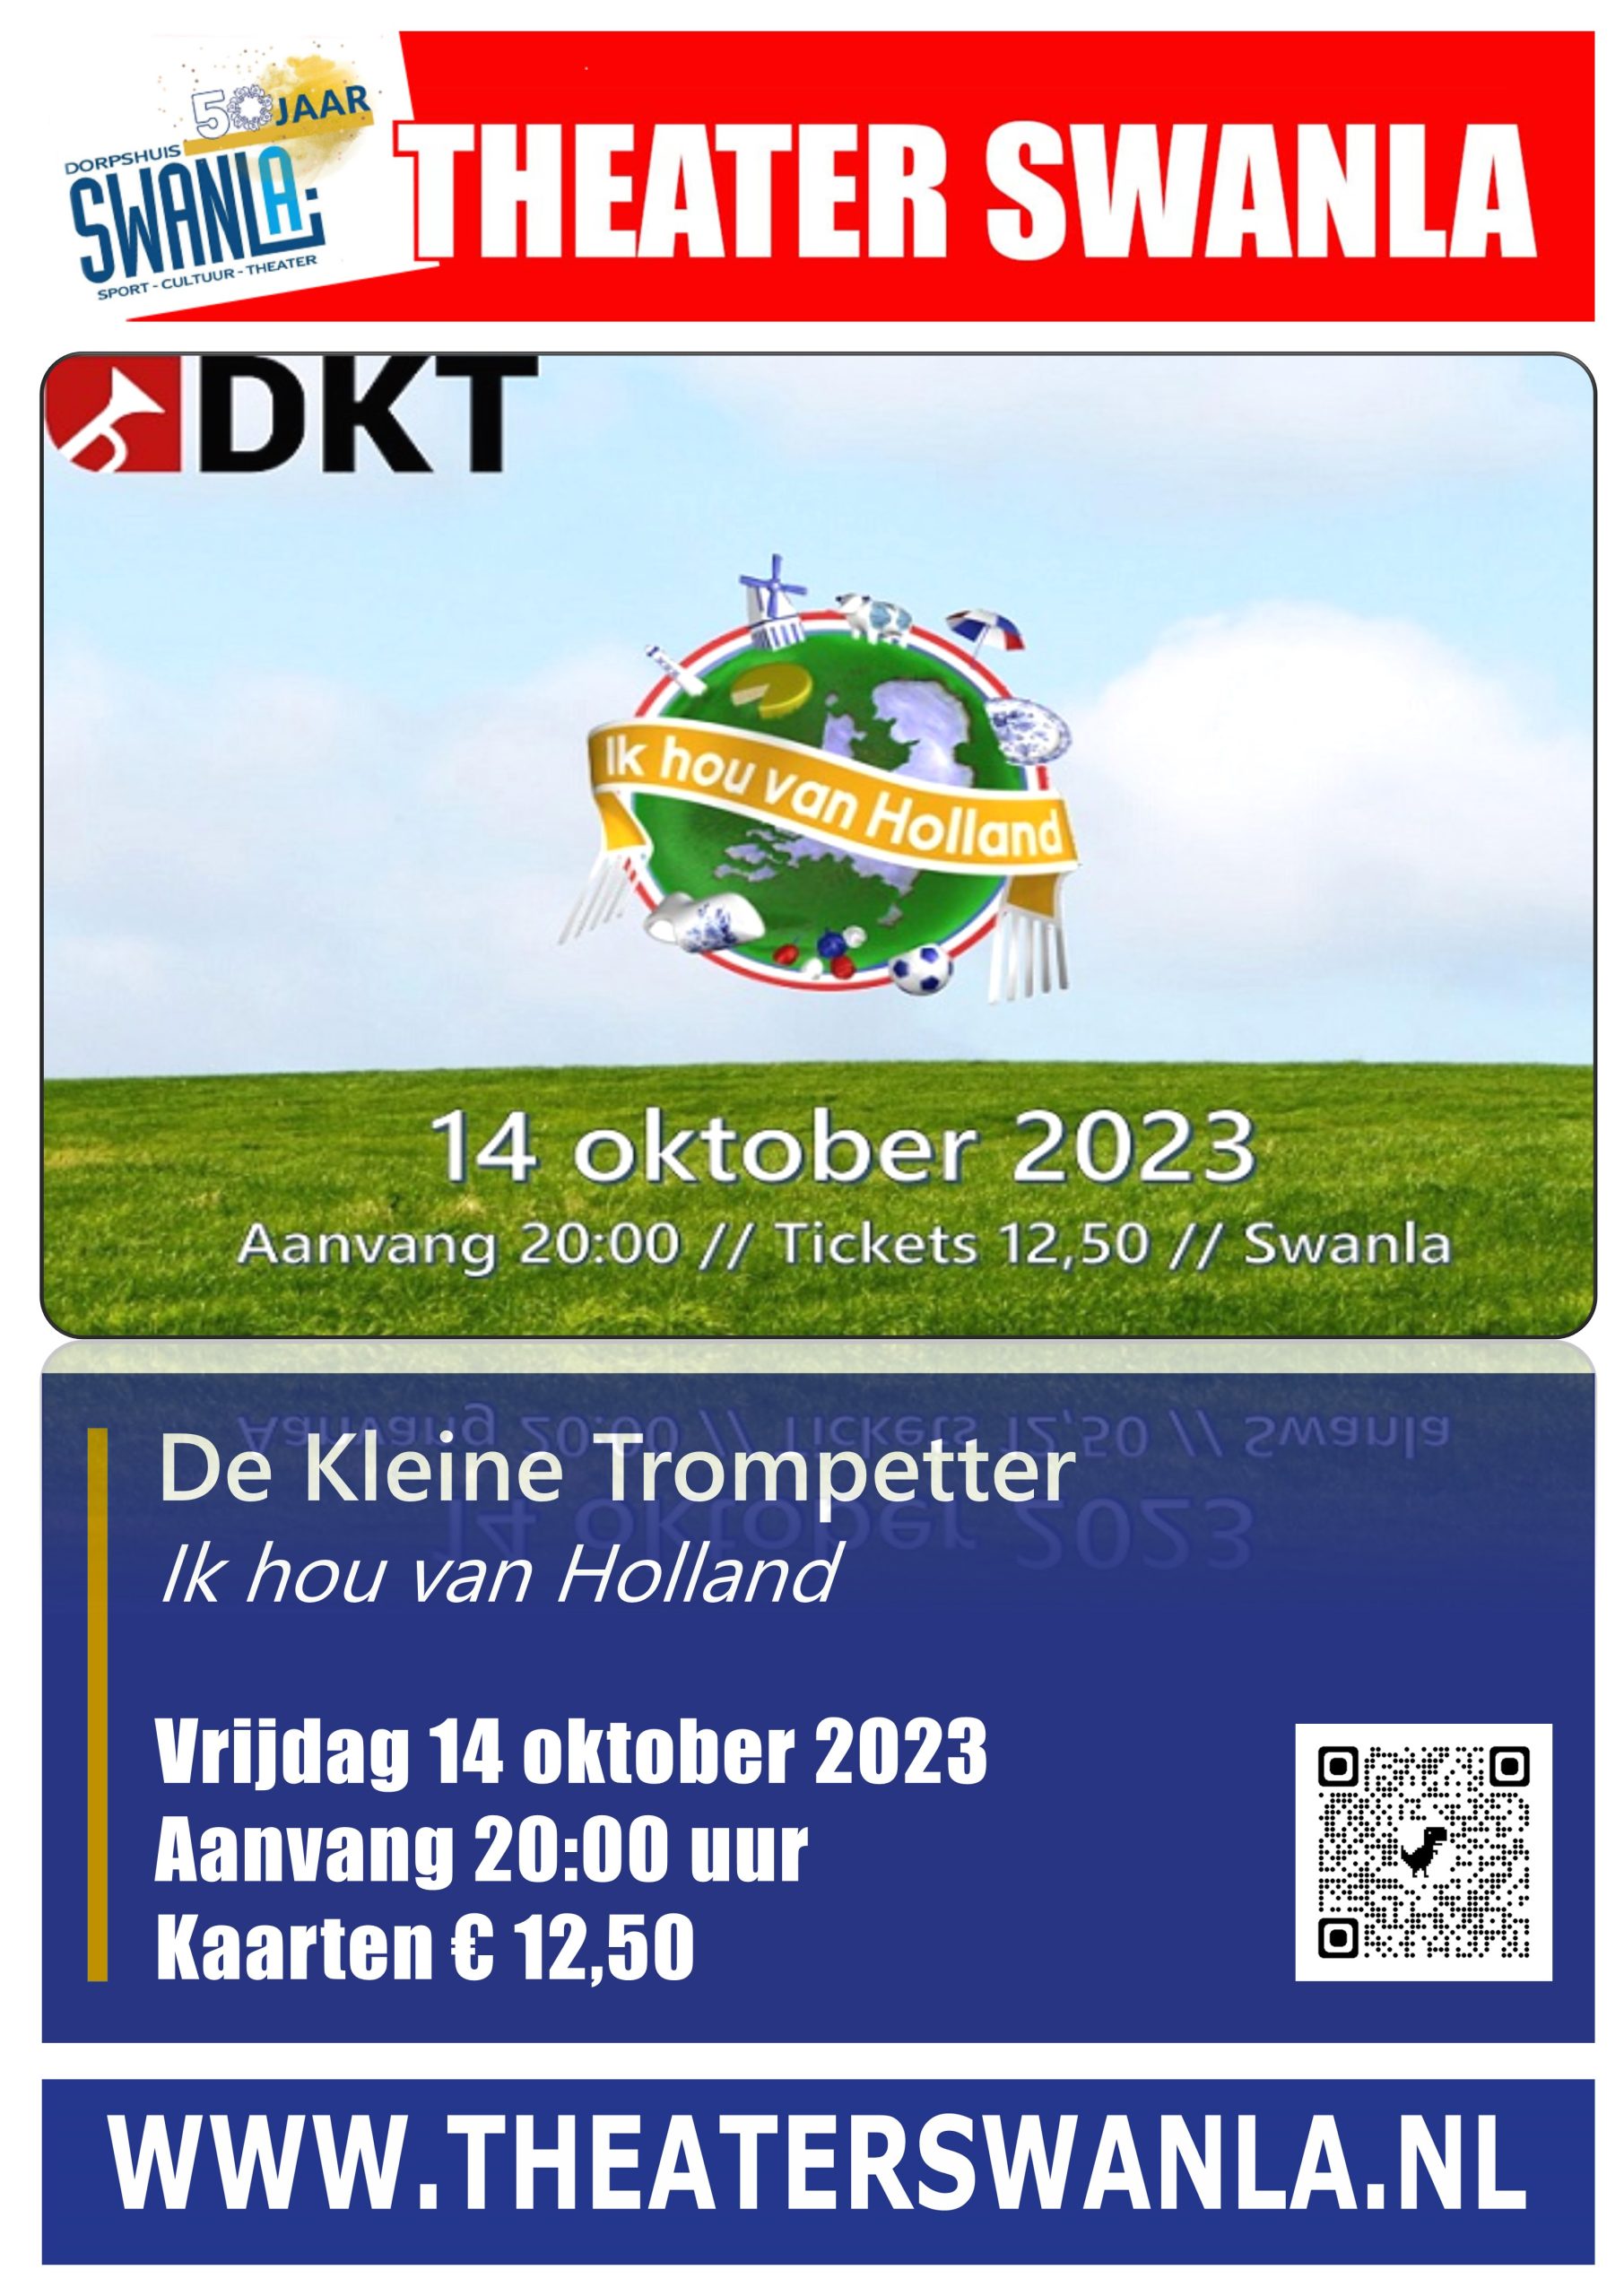 Poster van Theater Swanla - DKT - Ik hou van Holland